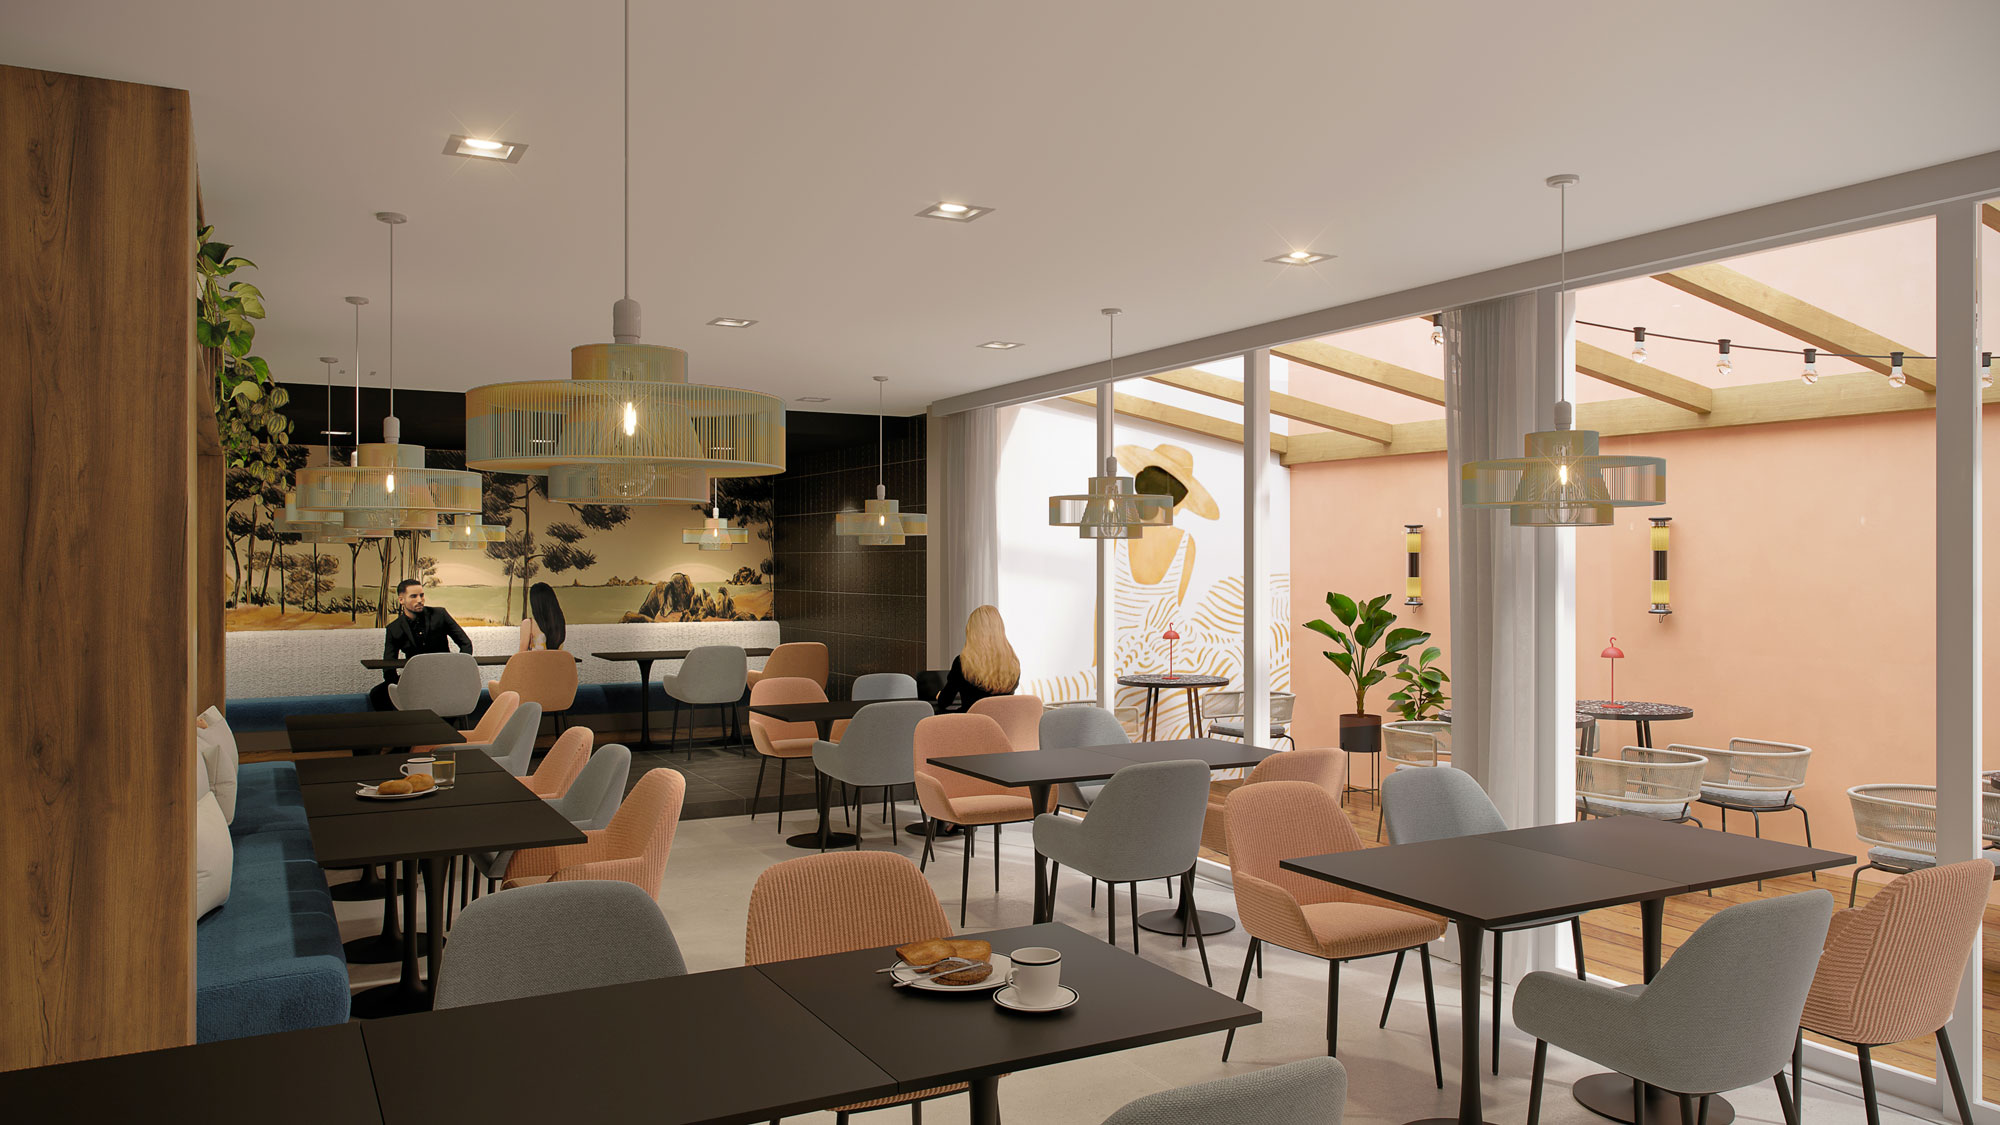 Architecture d'intérieur dans le cadre d'un projet concours de l'hôtel Mercure Président Biarritz.